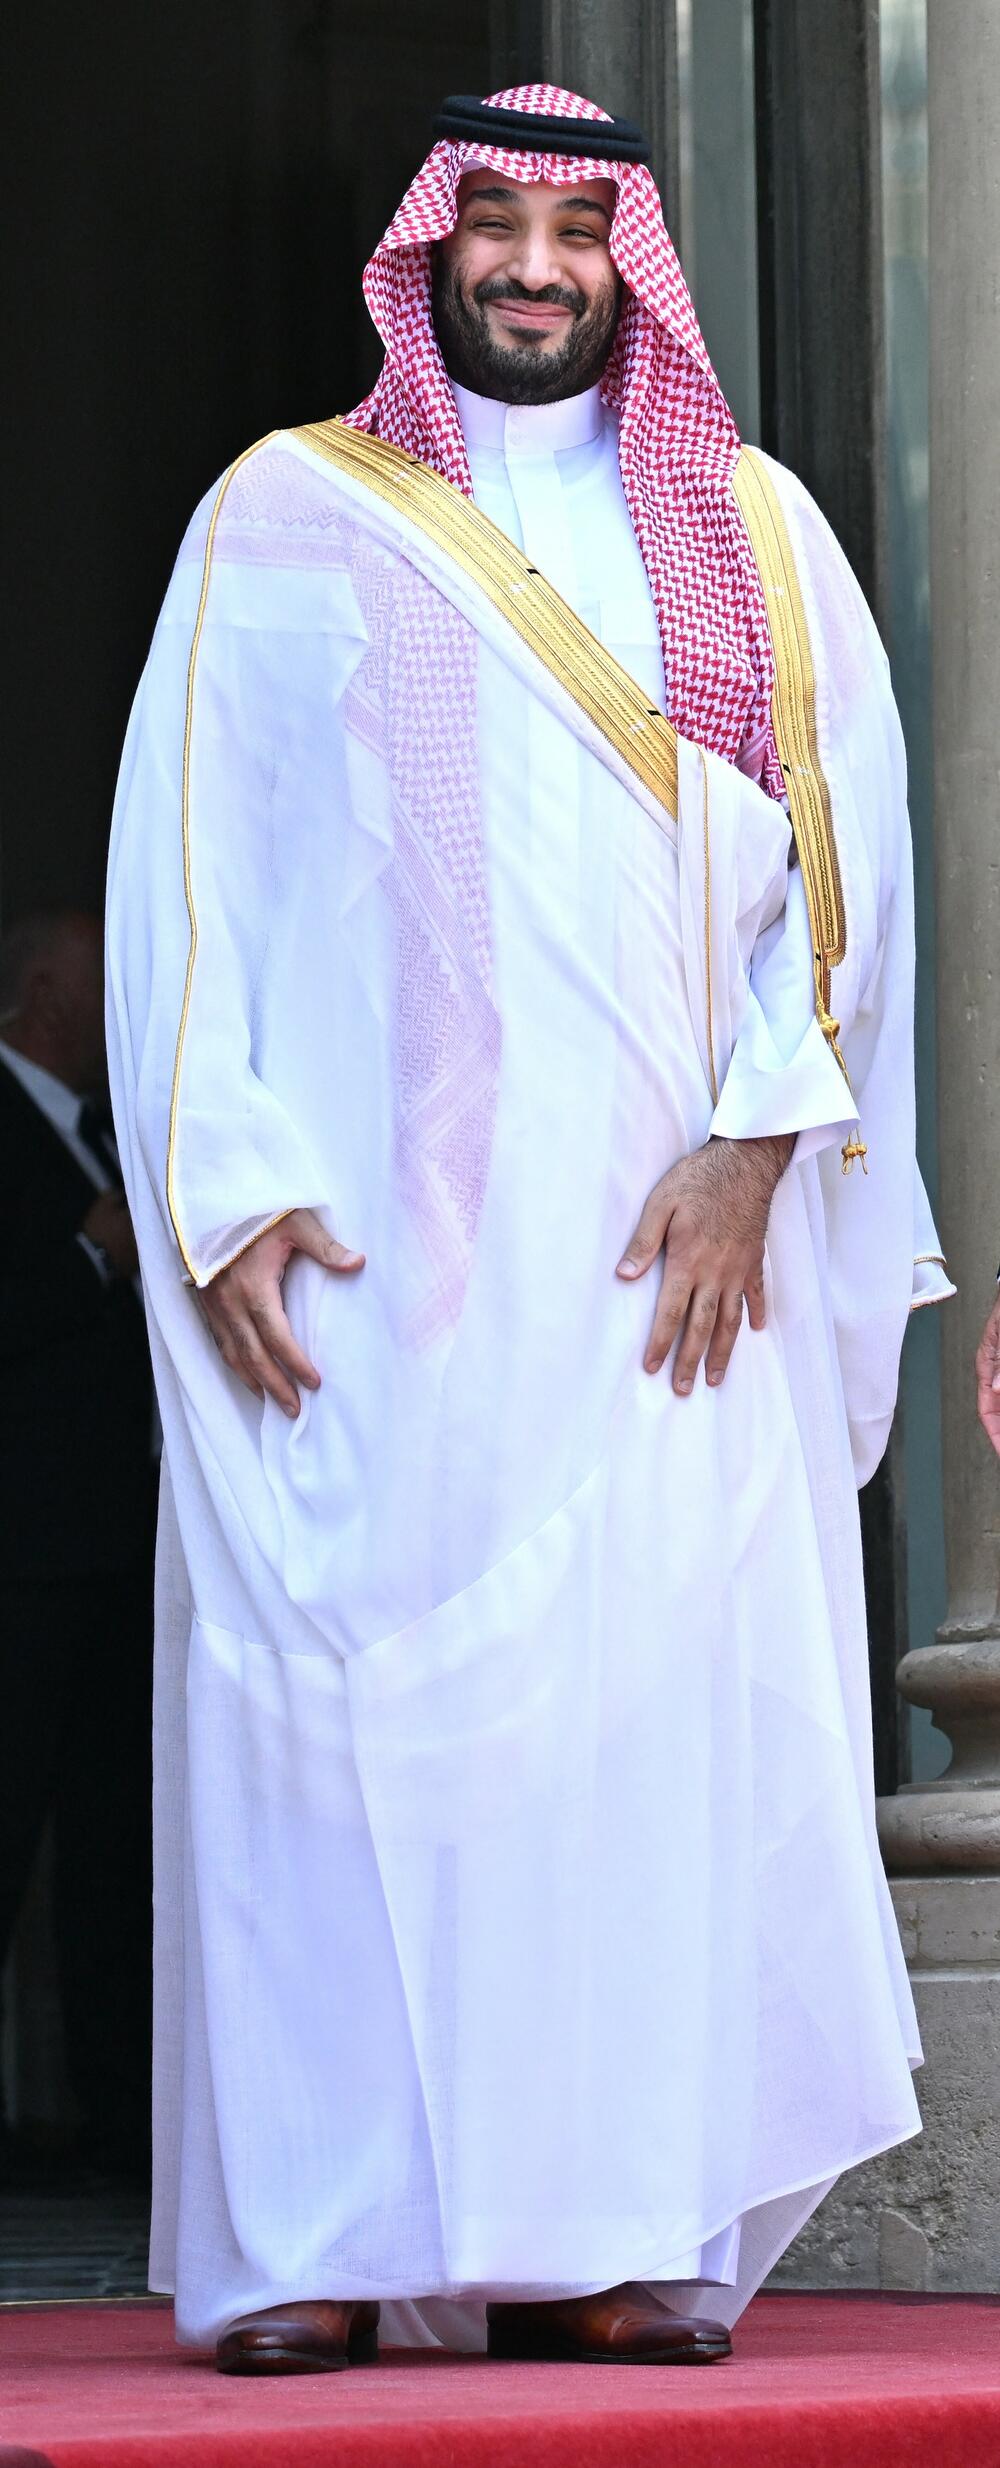 Mohamed Bin Salman